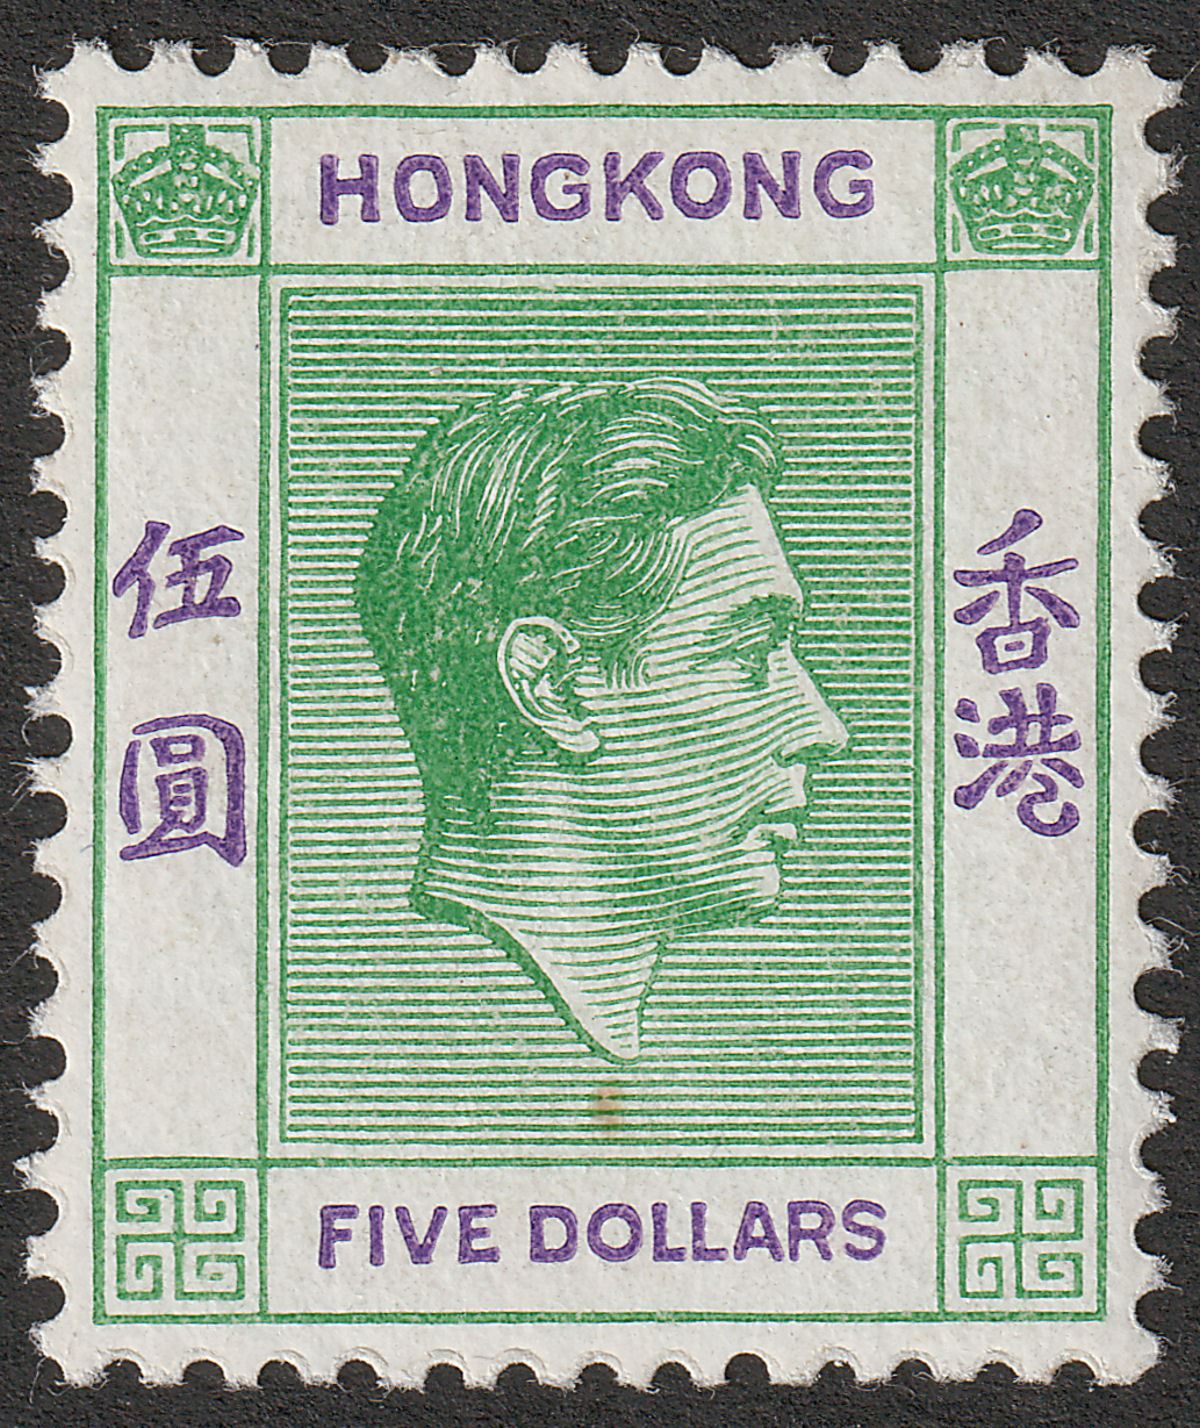 Hong Kong 1946 KGVI $5 Yellowish Green + Violet Mint SG160a cat £600 small tone